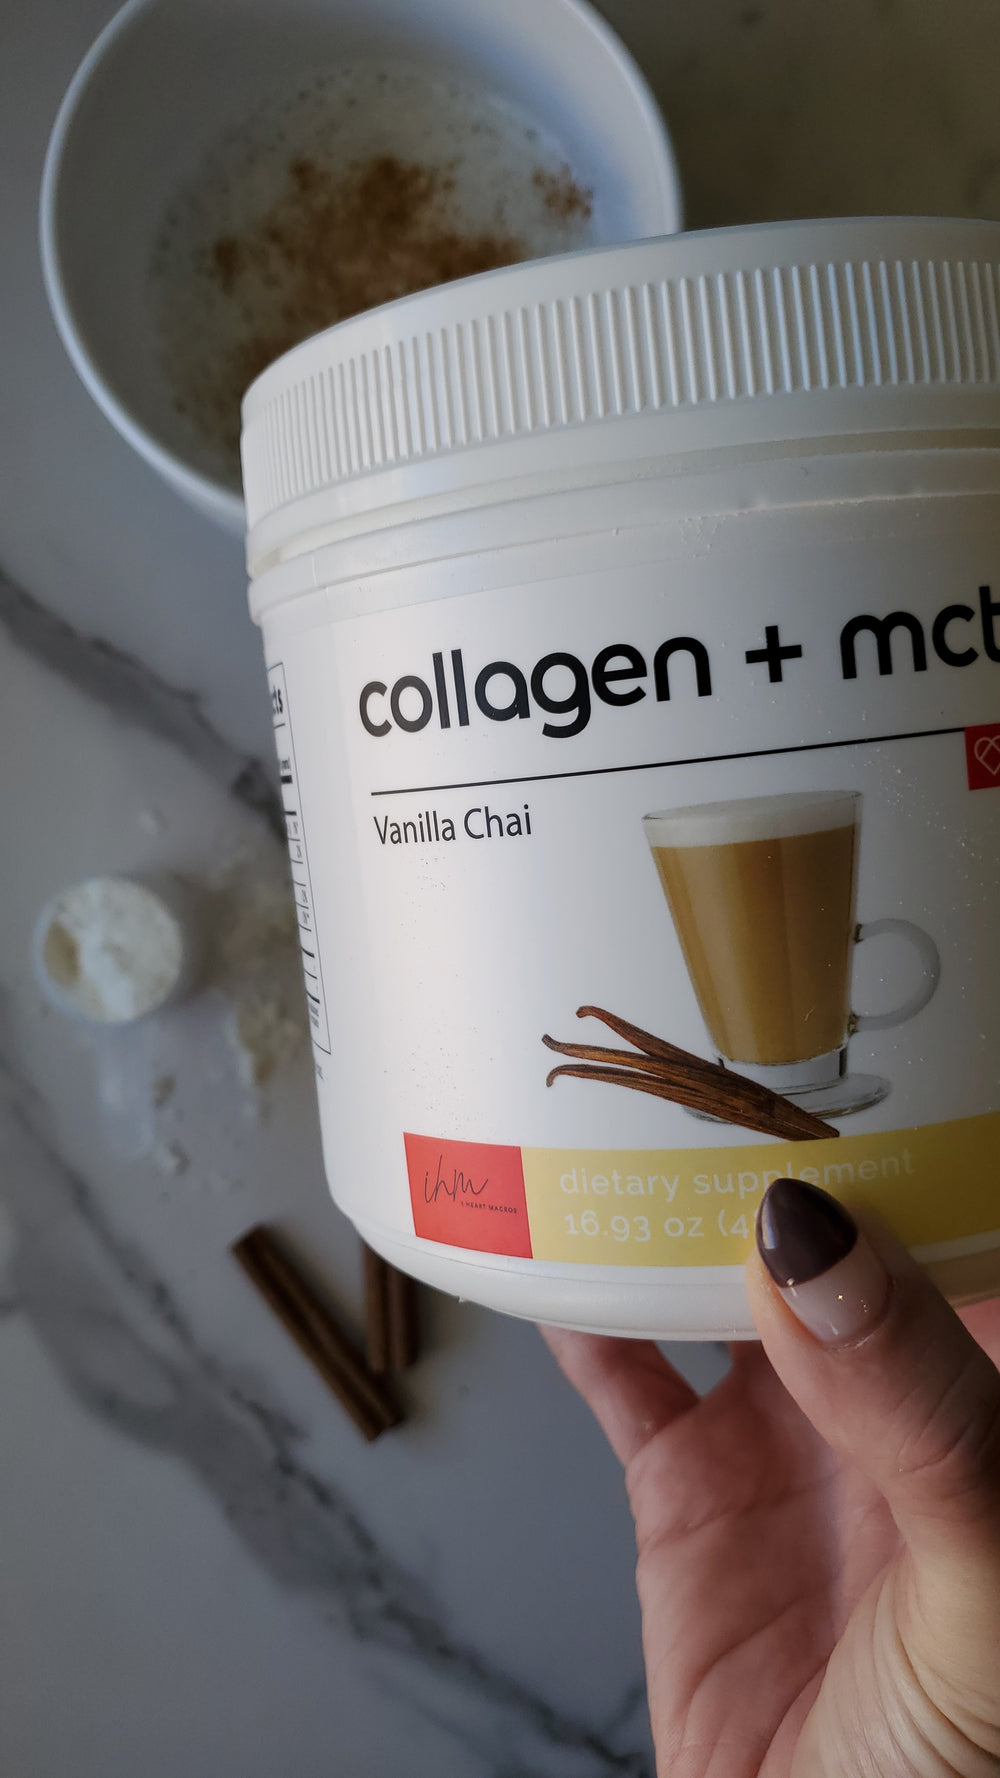 iHeart Collagen + MCT - Vanilla Chai